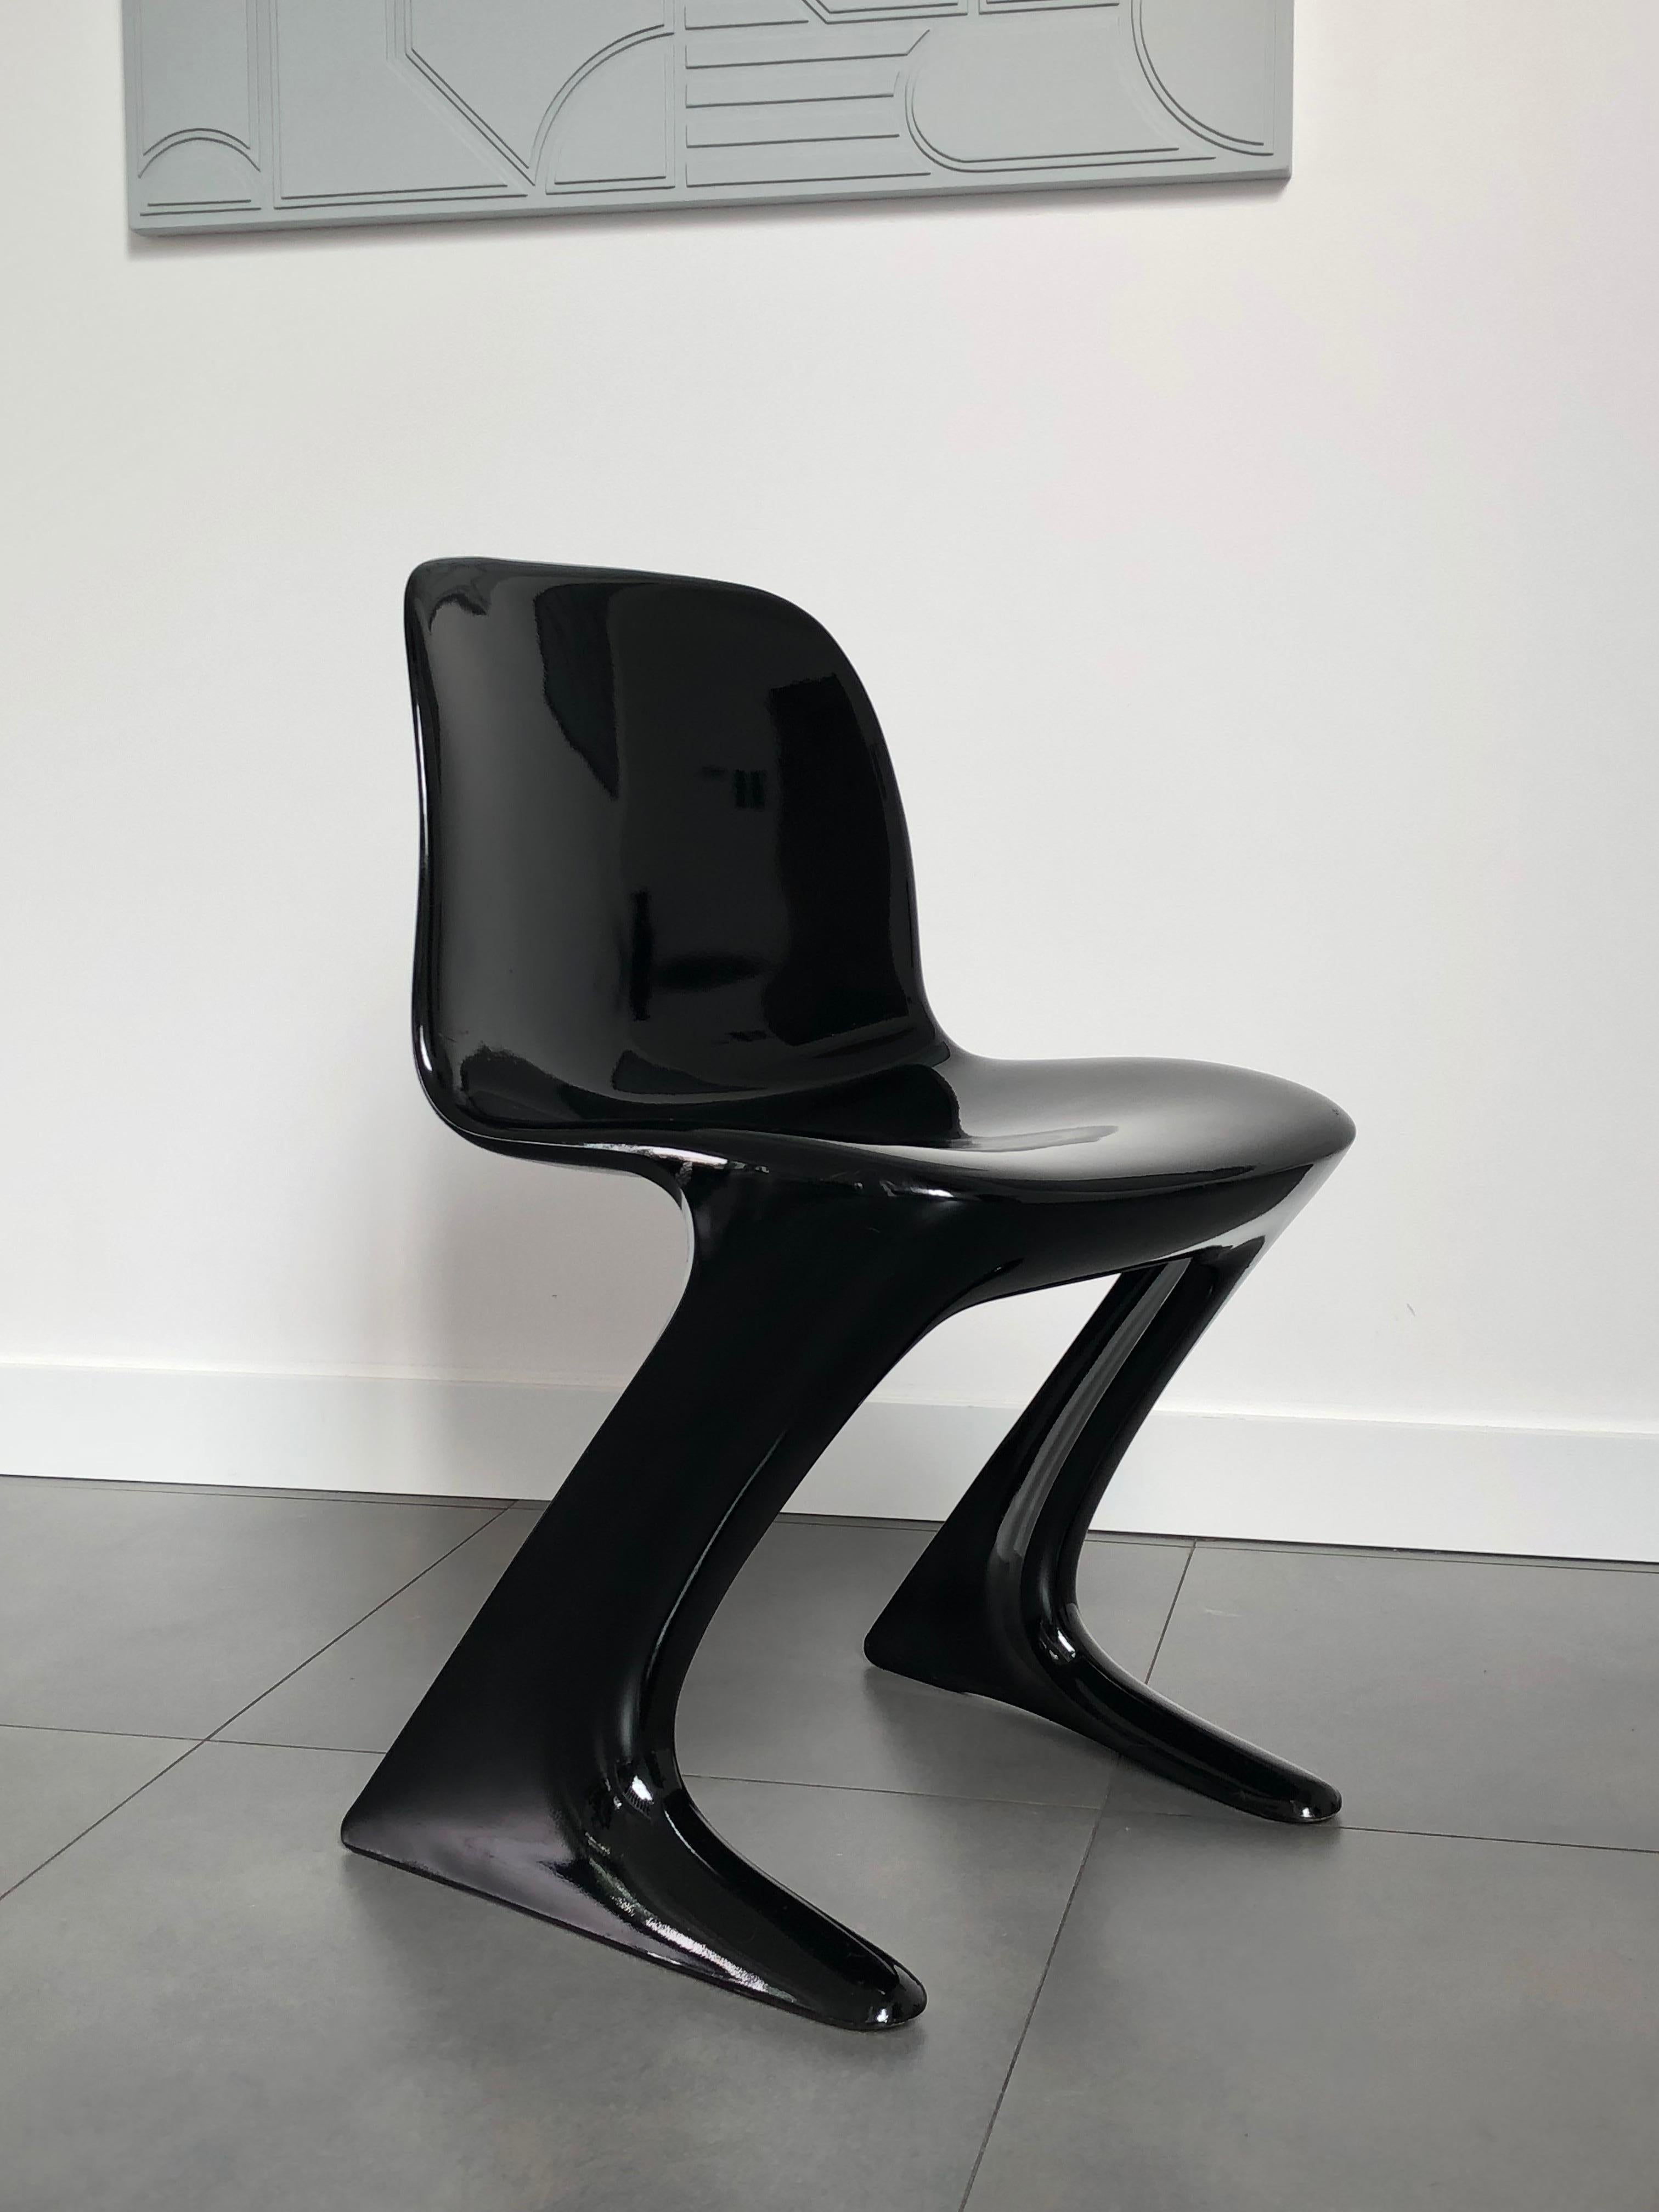 Dieser Satz wird als Z-Stuhl bezeichnet. 1968 in der DDR von Ernst Moeckl und Siegfried Mehl entworfen, deutsche Version des Panton-Stuhls. Auch Känguru-Stuhl oder Variopur-Stuhl genannt. Produziert in Ostdeutschland.

Die Stühle sind renoviert -